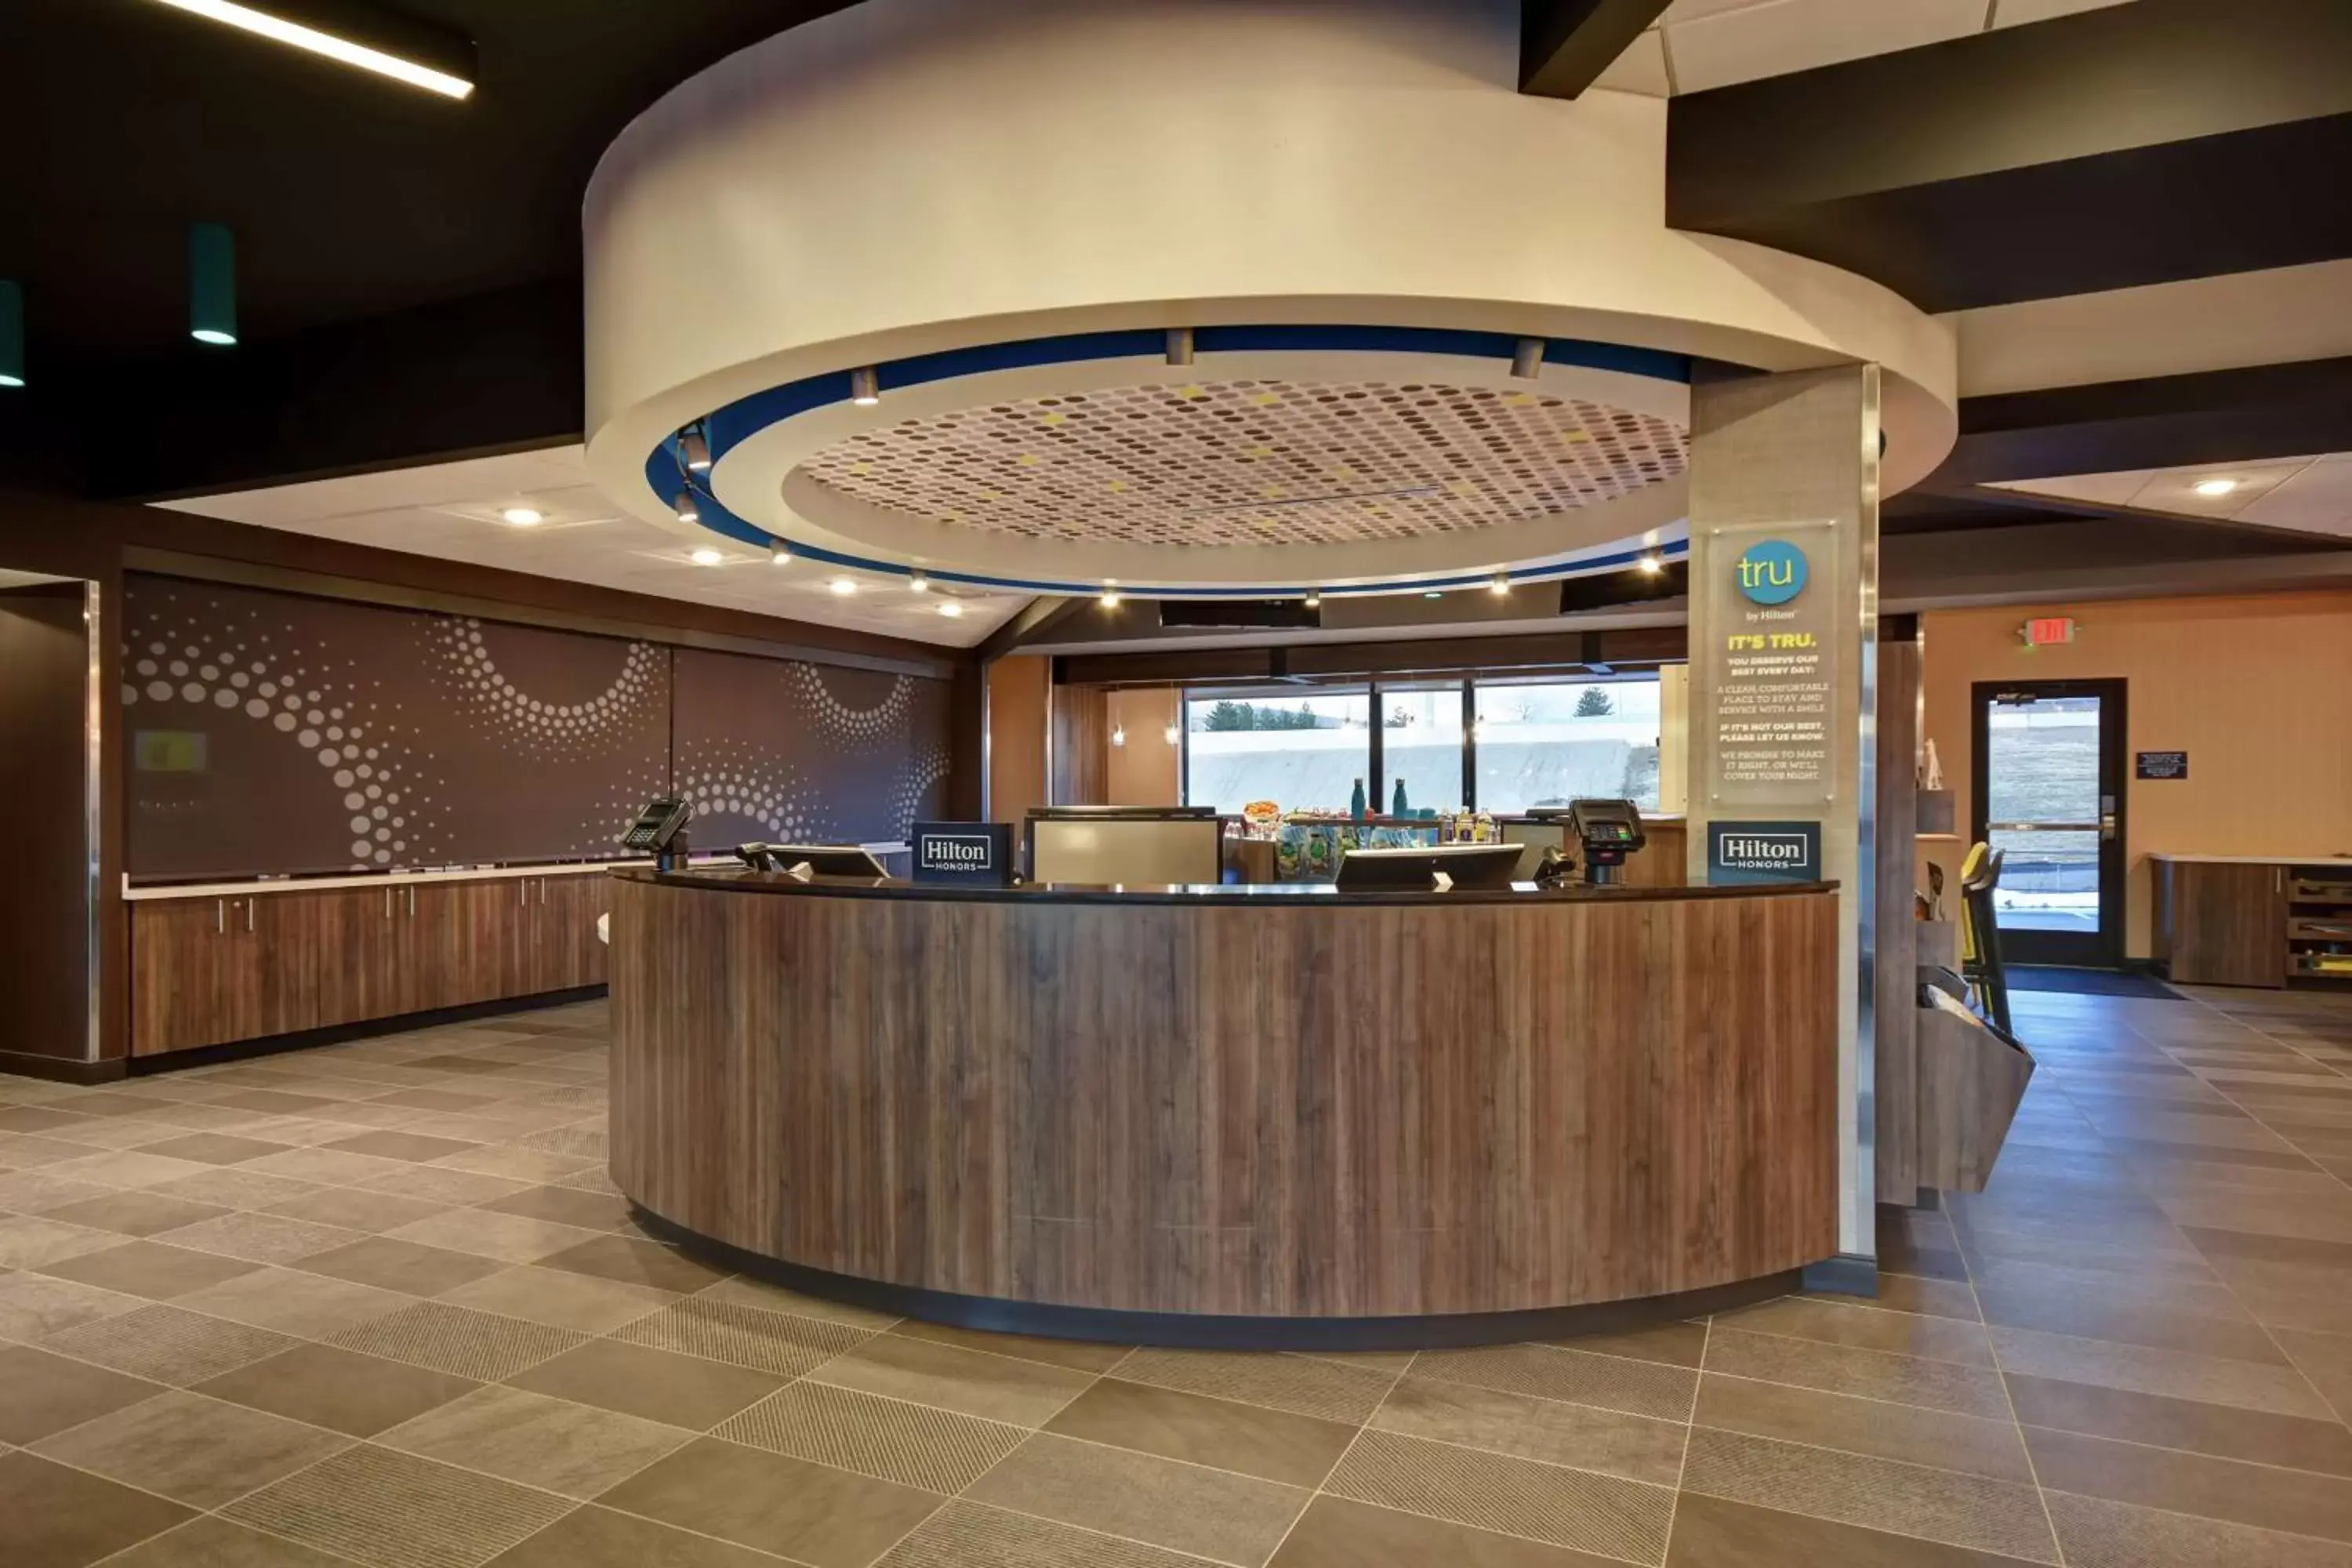 Lobby or reception, Lobby/Reception in Tru By Hilton Denver South Park Meadows, Co